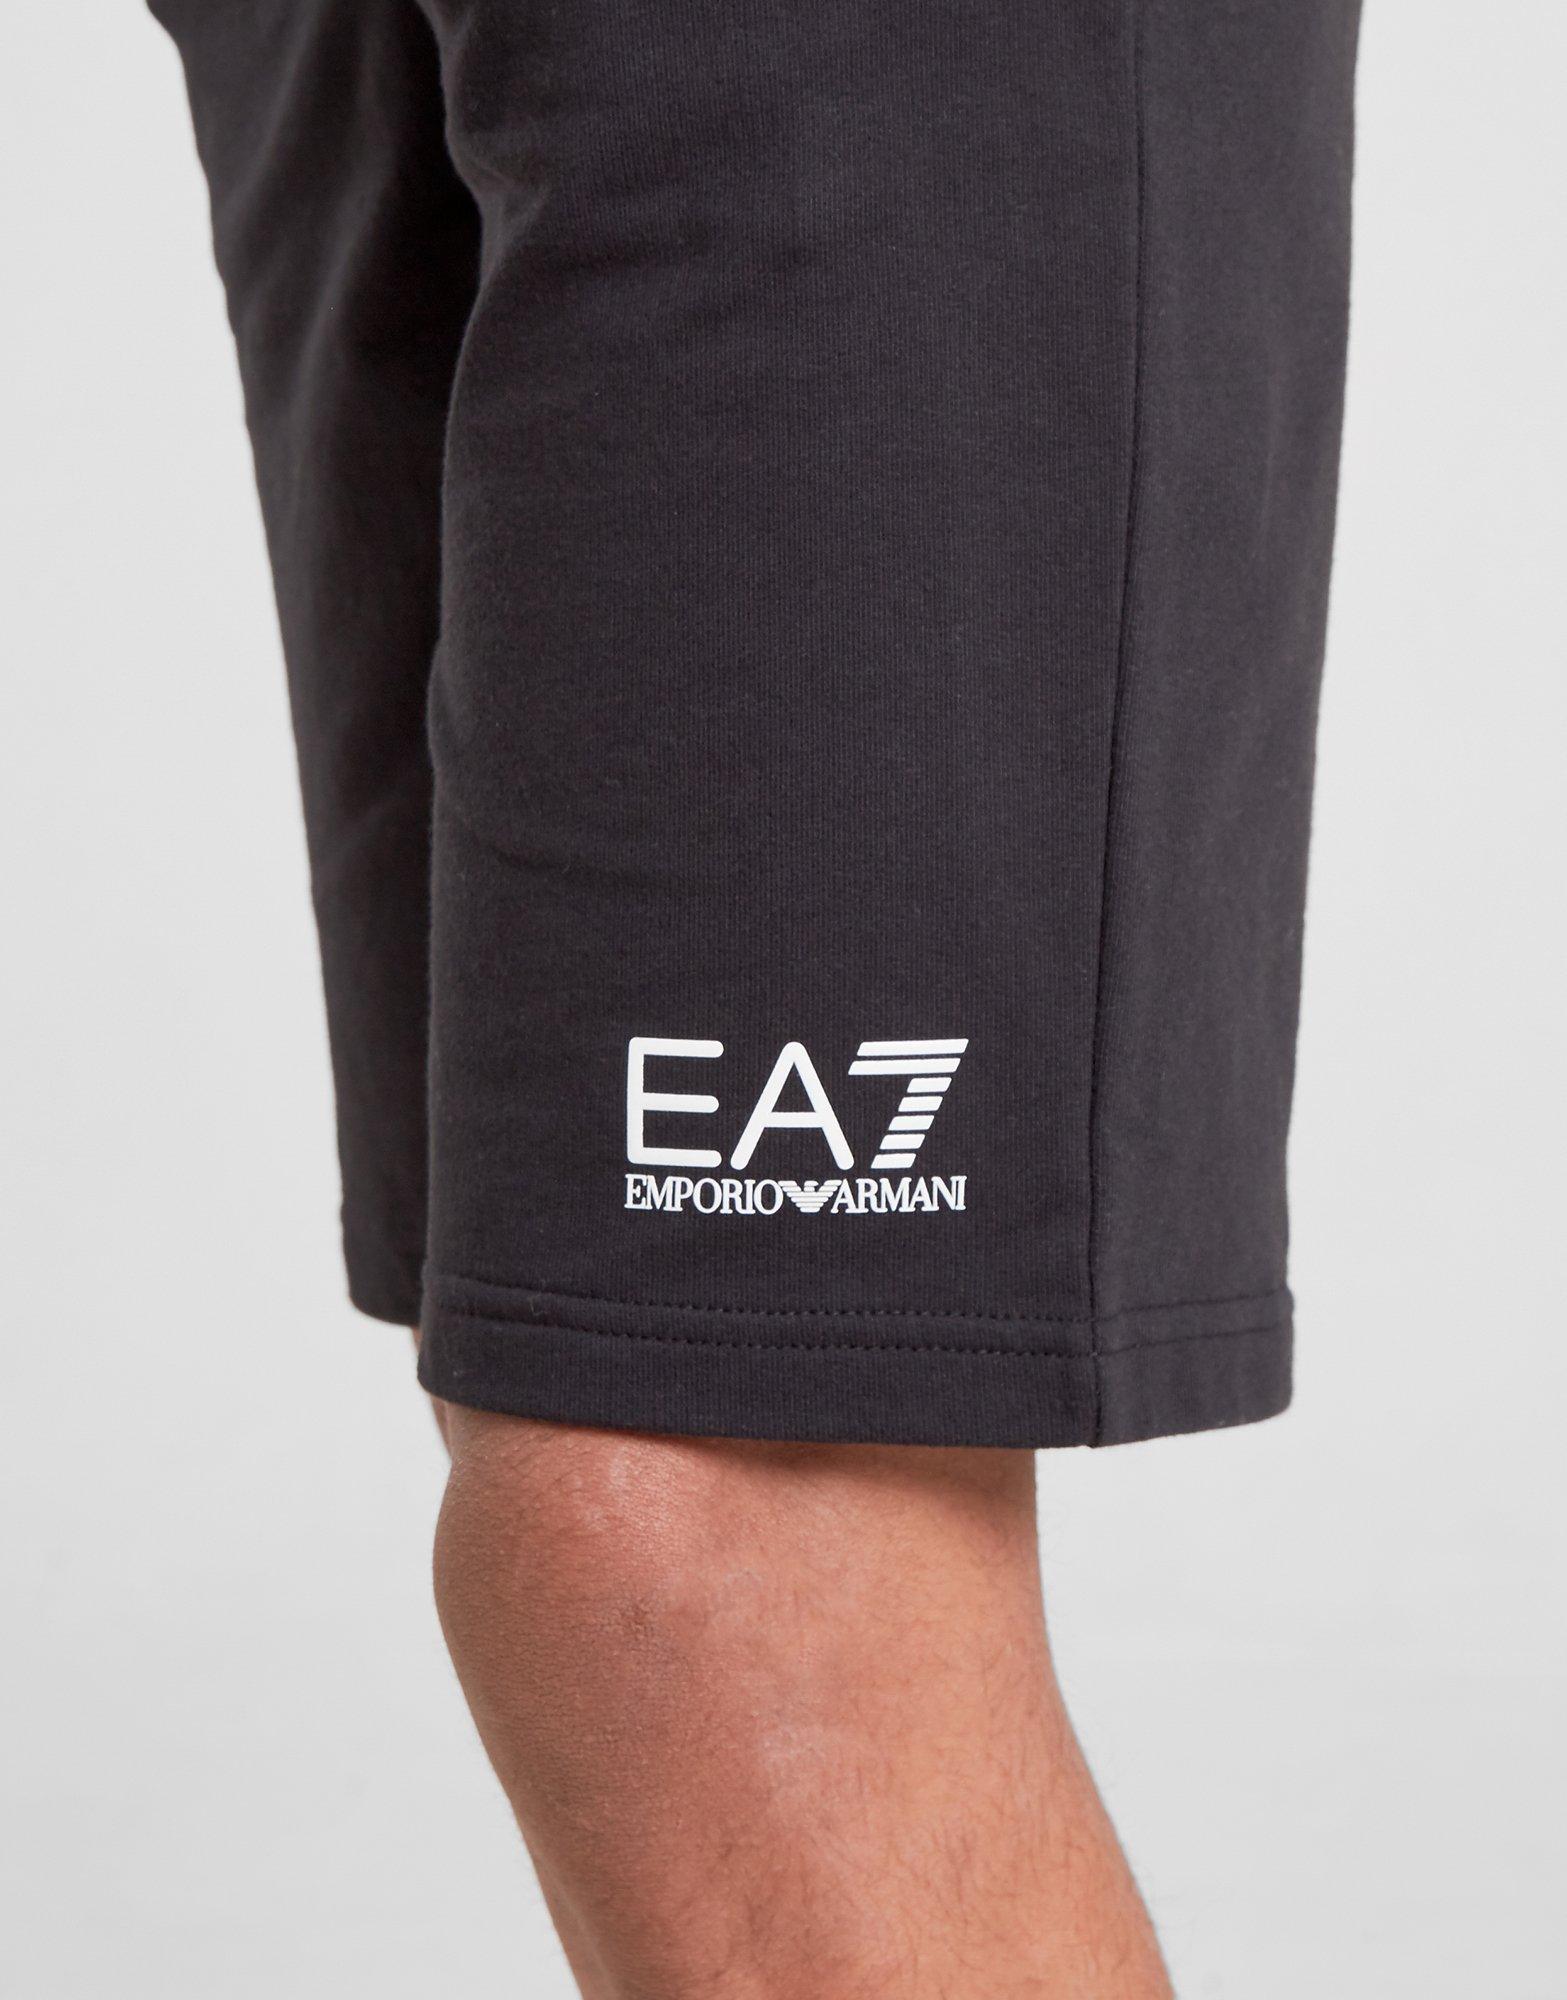 ea7 junior shorts